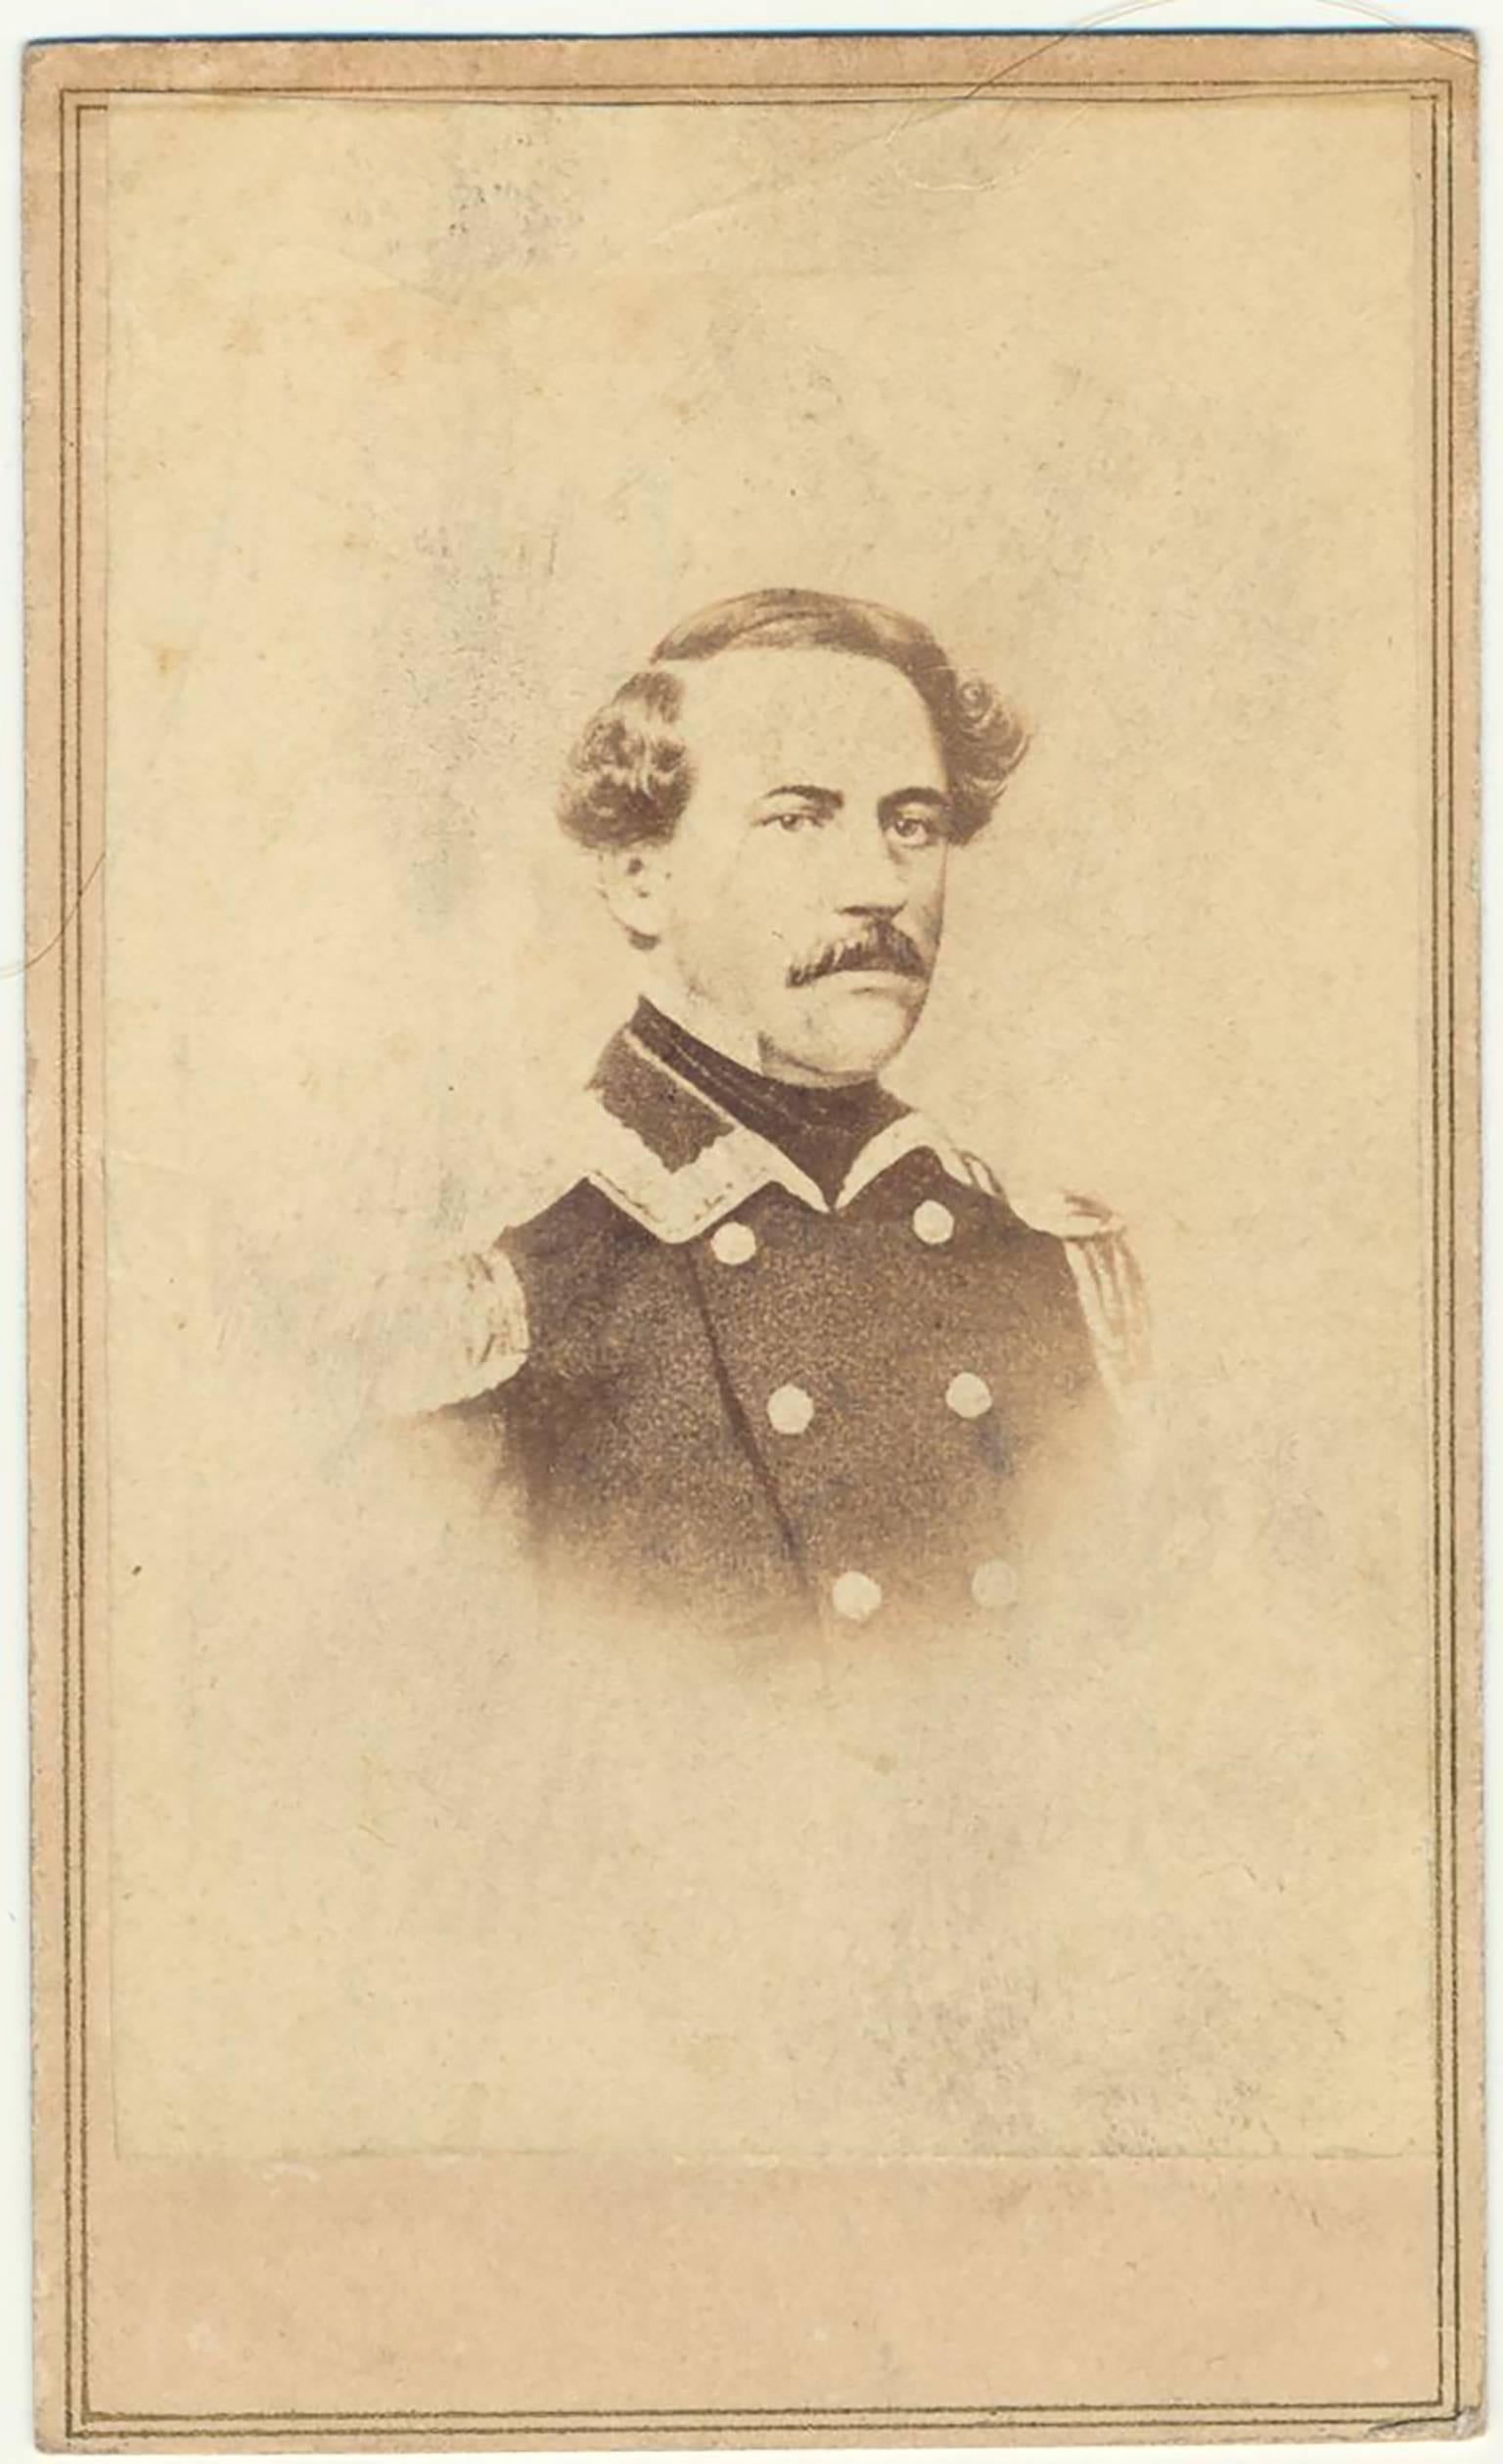 Unknown Portrait Photograph - Rare Original Carte De Visite Photograph of Civil War General Robert E. Lee